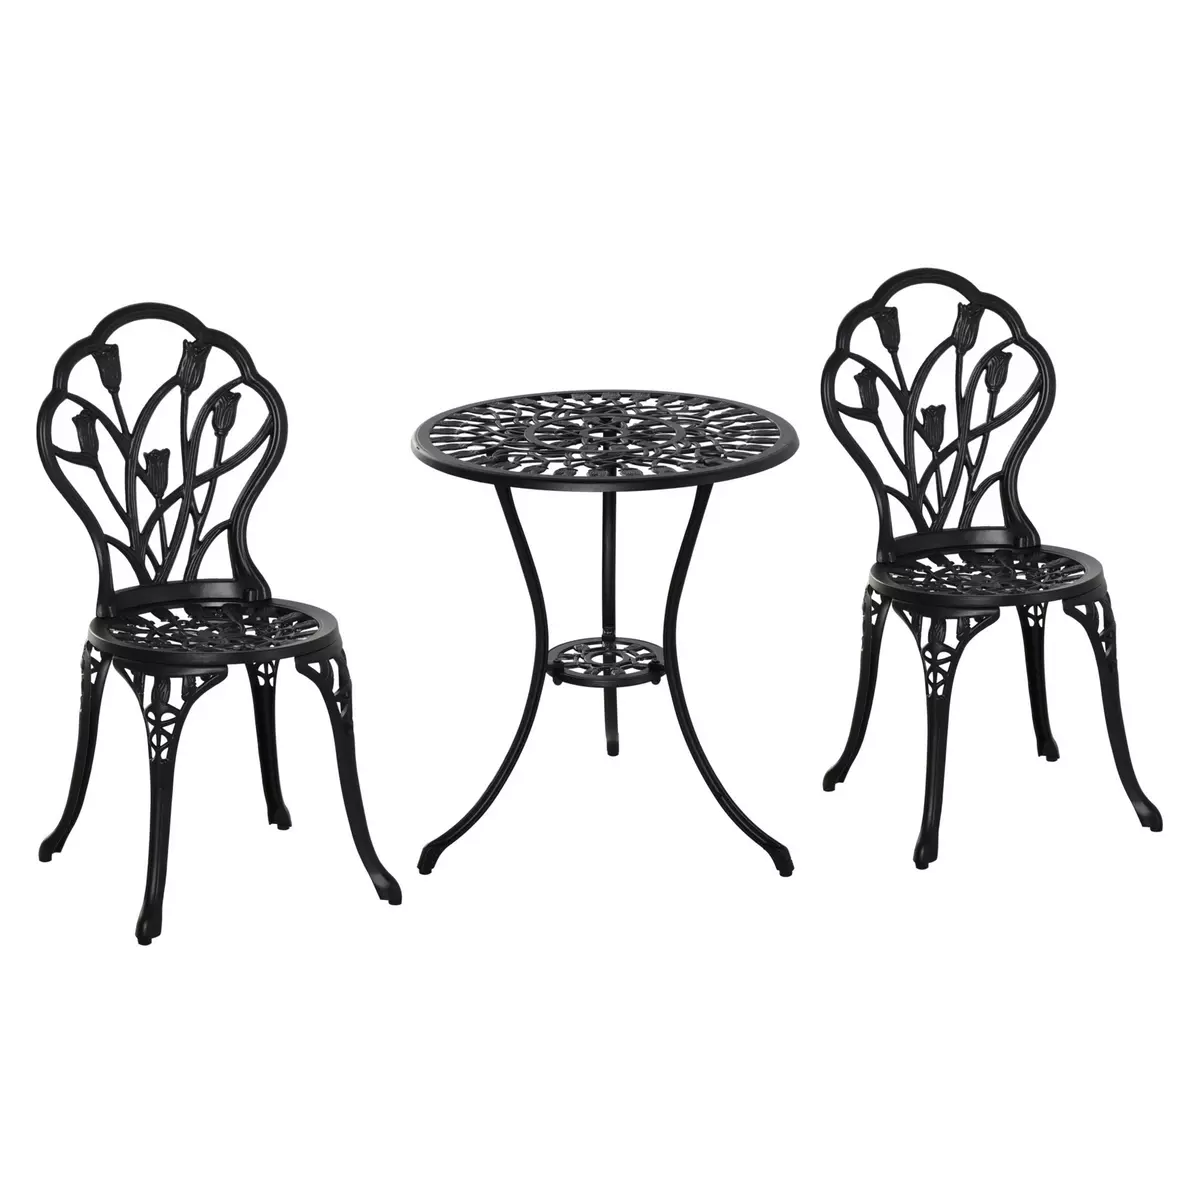 OUTSUNNY Ensemble salon de jardin 2 places 2 chaises + table ronde fonte d'aluminium imitation fer forgé noir